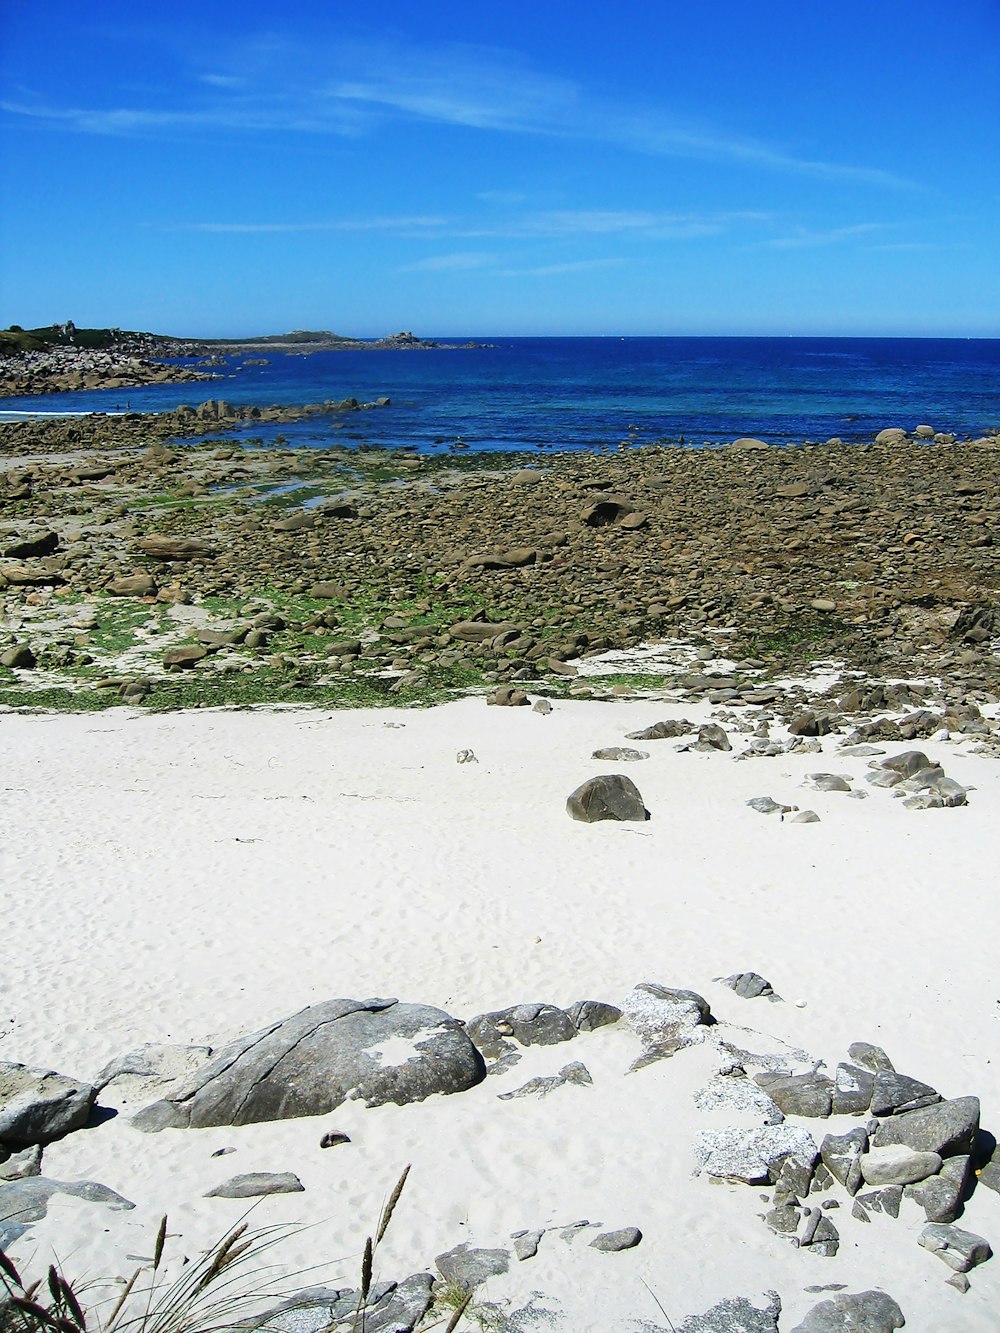 Rocas grises en la playa de arena blanca durante el día